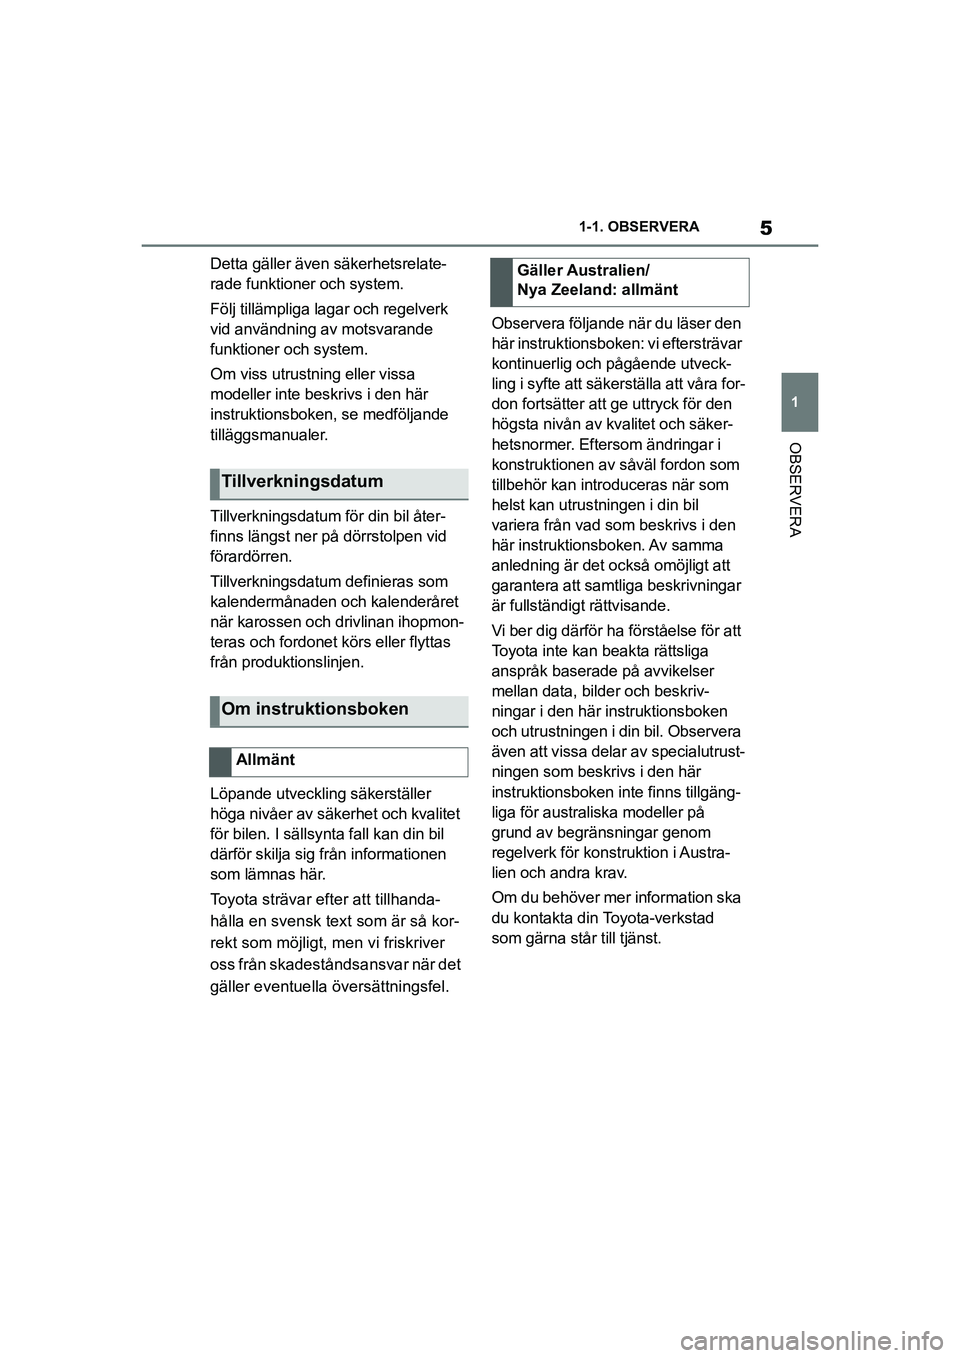 TOYOTA SUPRA 2021  Bruksanvisningar (in Swedish) 5
1
1-1. OBSERVERA
OBSERVERA
Supra Owners Manual_E (from Nov. 20 Prod.)
Detta gäller även säkerhetsrelate-
rade funktioner och system.
Följ tillämpliga lagar och regelverk 
vid användning av m